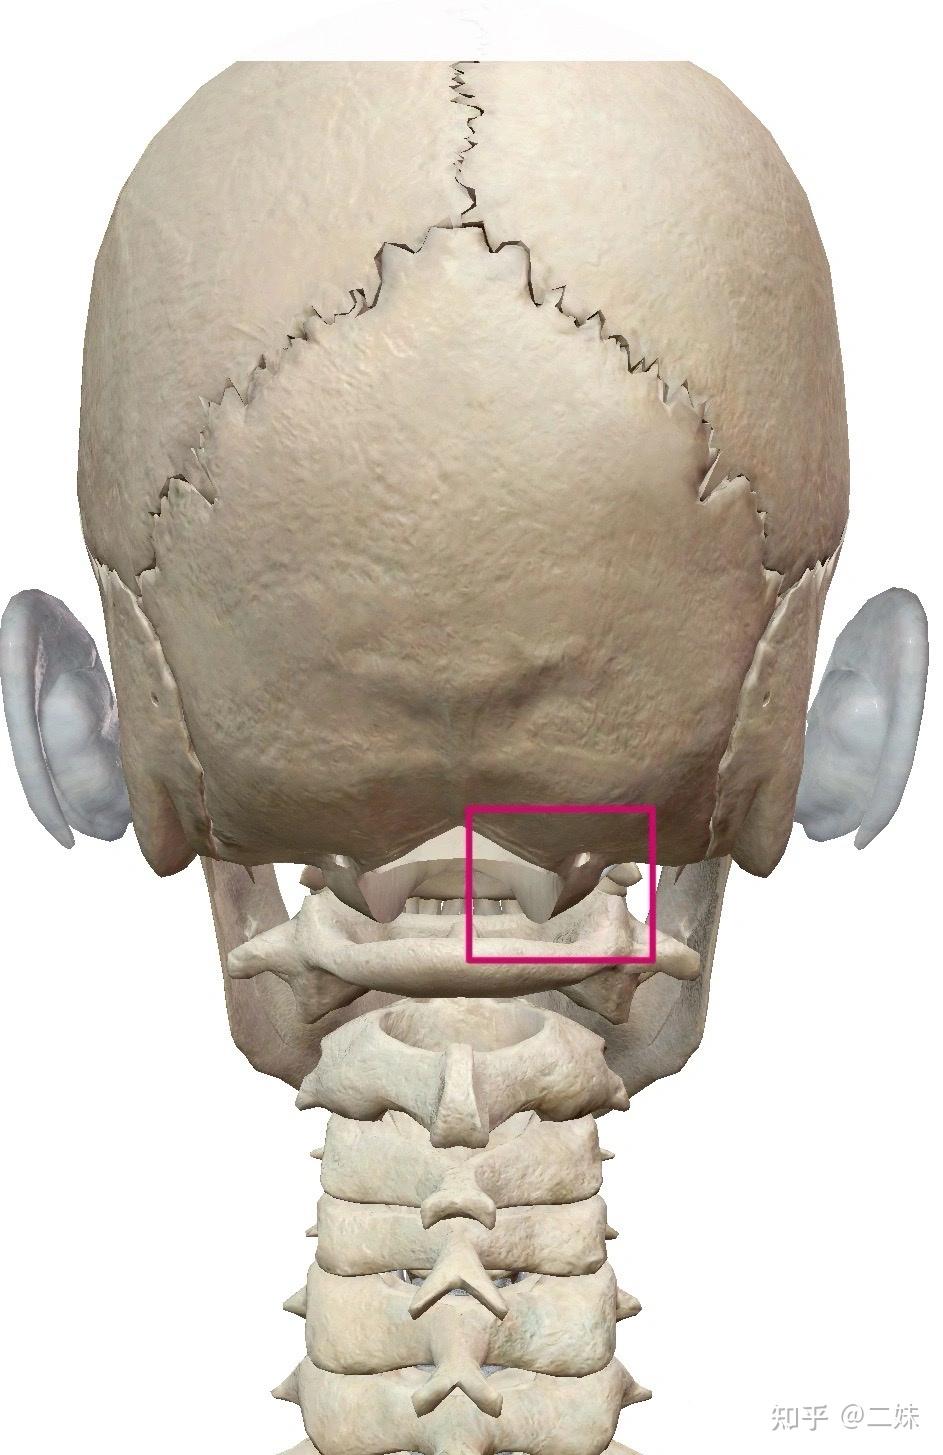 寰枕关节:由人体枕骨与颈椎c1寰椎组成,属于髁状关节;寰枕关节的运动